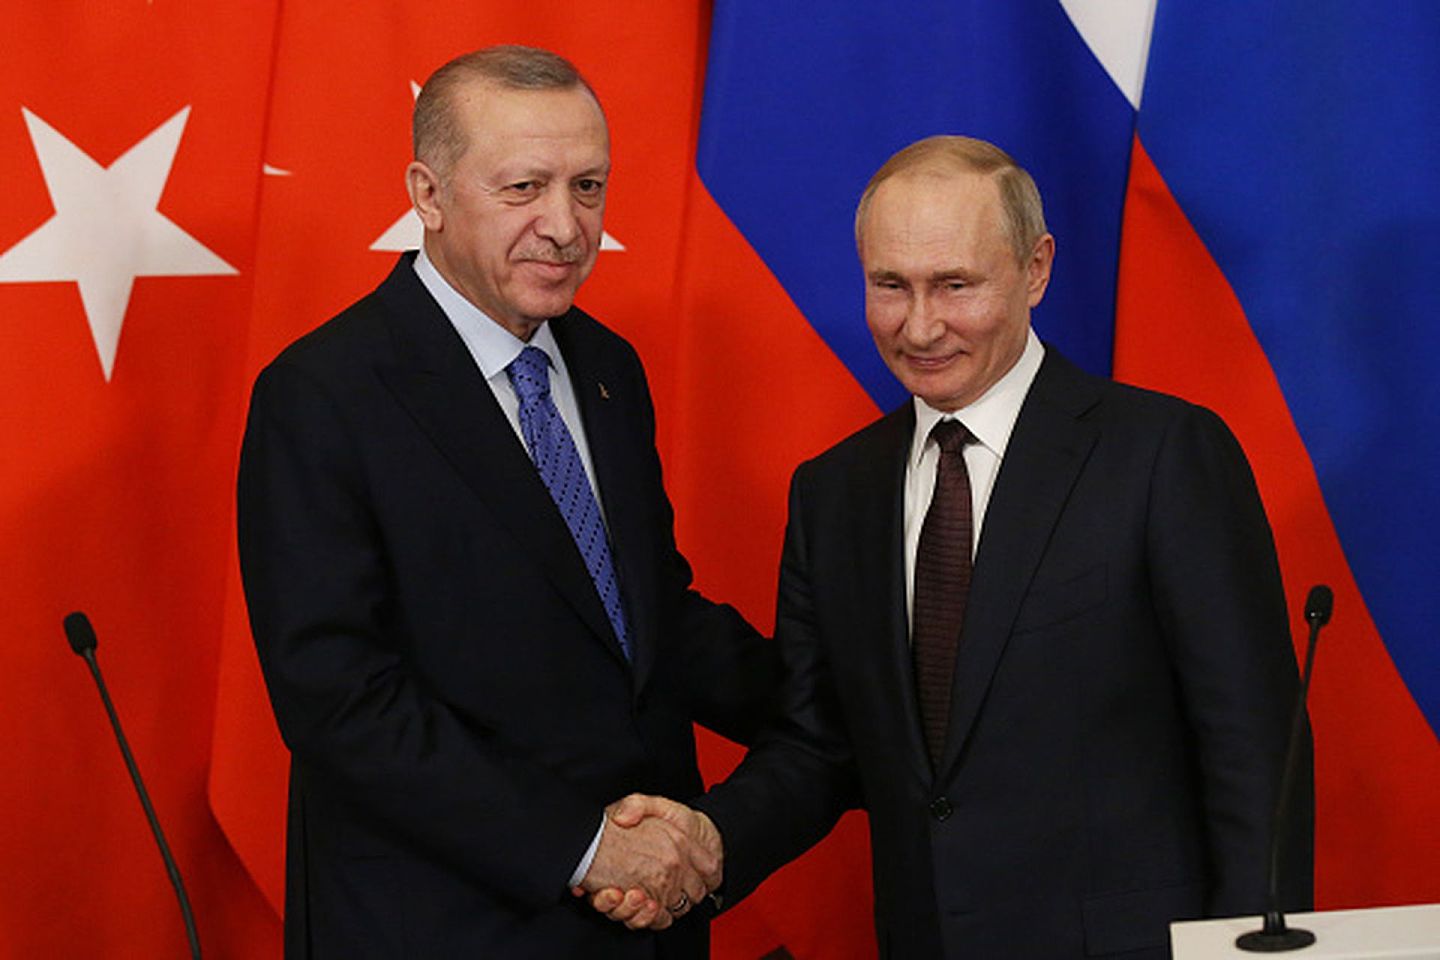 尽管俄土两国在地缘利益上存在诸多矛盾，但双方似乎总能通过精巧的牌底交易避免正面冲突，并进行卓有成效的战略合作。图为2020年3月5日，俄罗斯总统普京在莫斯科接见到访的土耳其总统埃尔多安，双方围绕叙北伊德利卜省局势举行了会谈。（Getty Images）